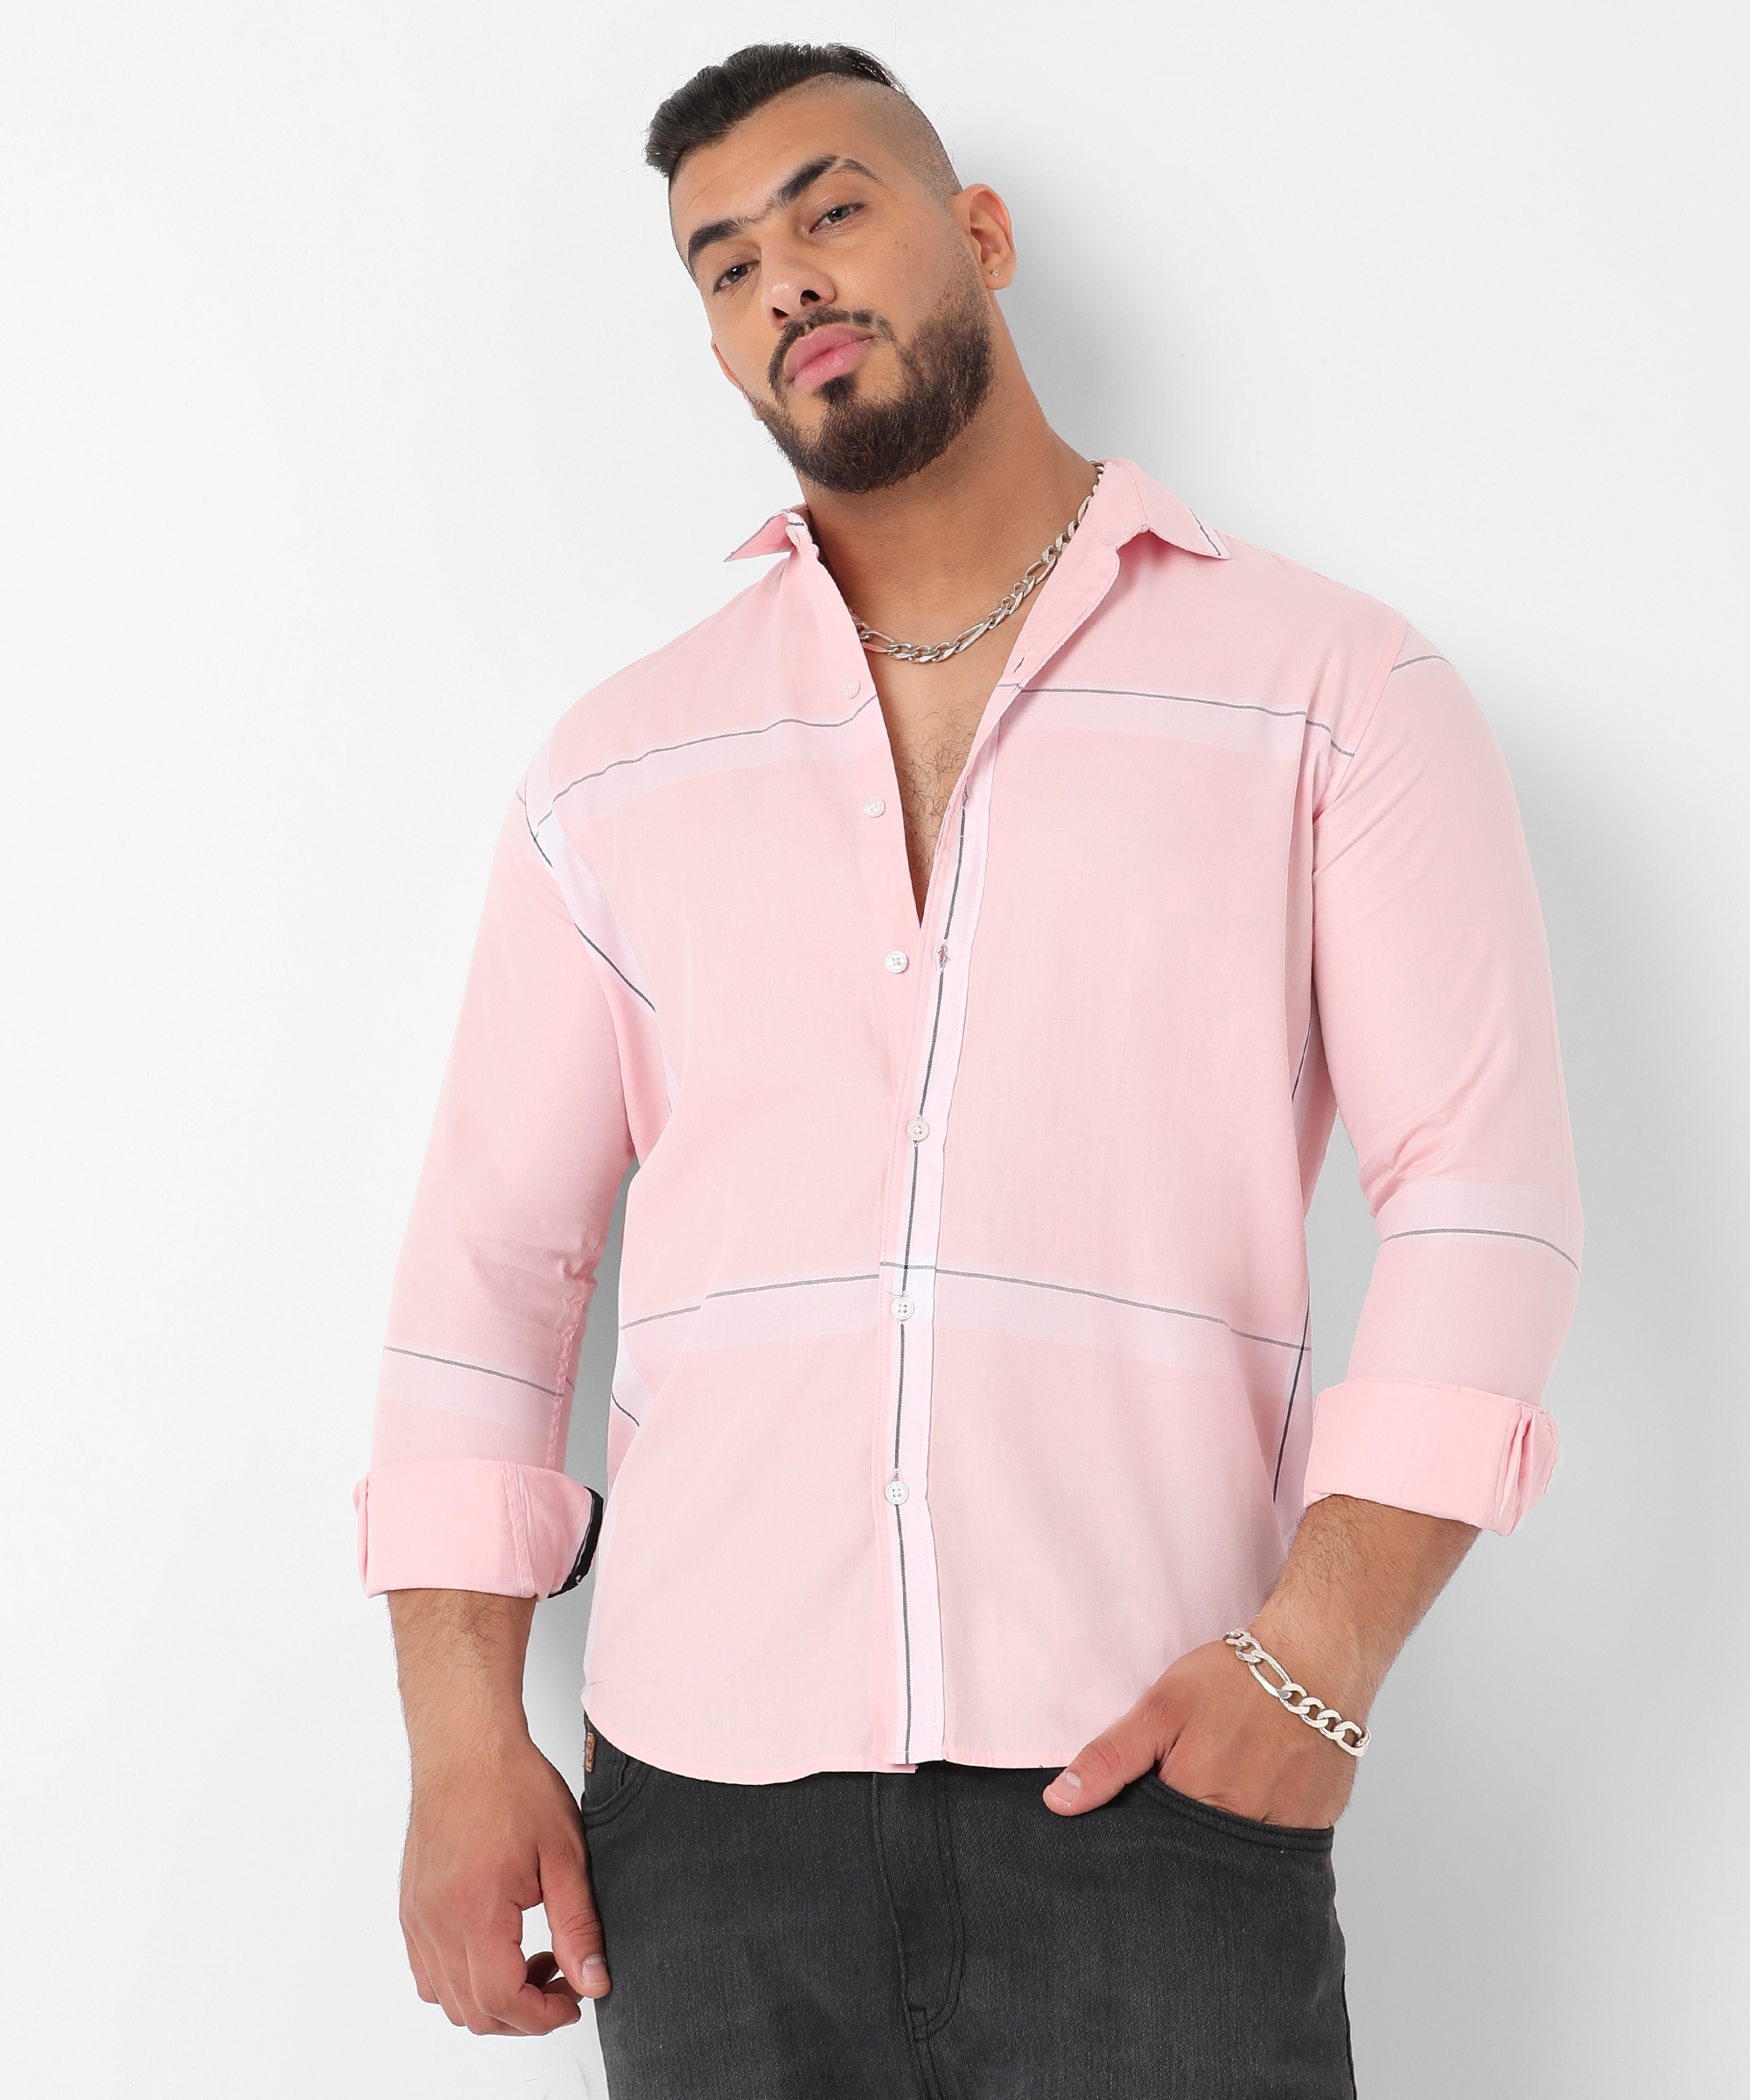 Instafab Plus | Men's Pastel Striped Button Up Shirt